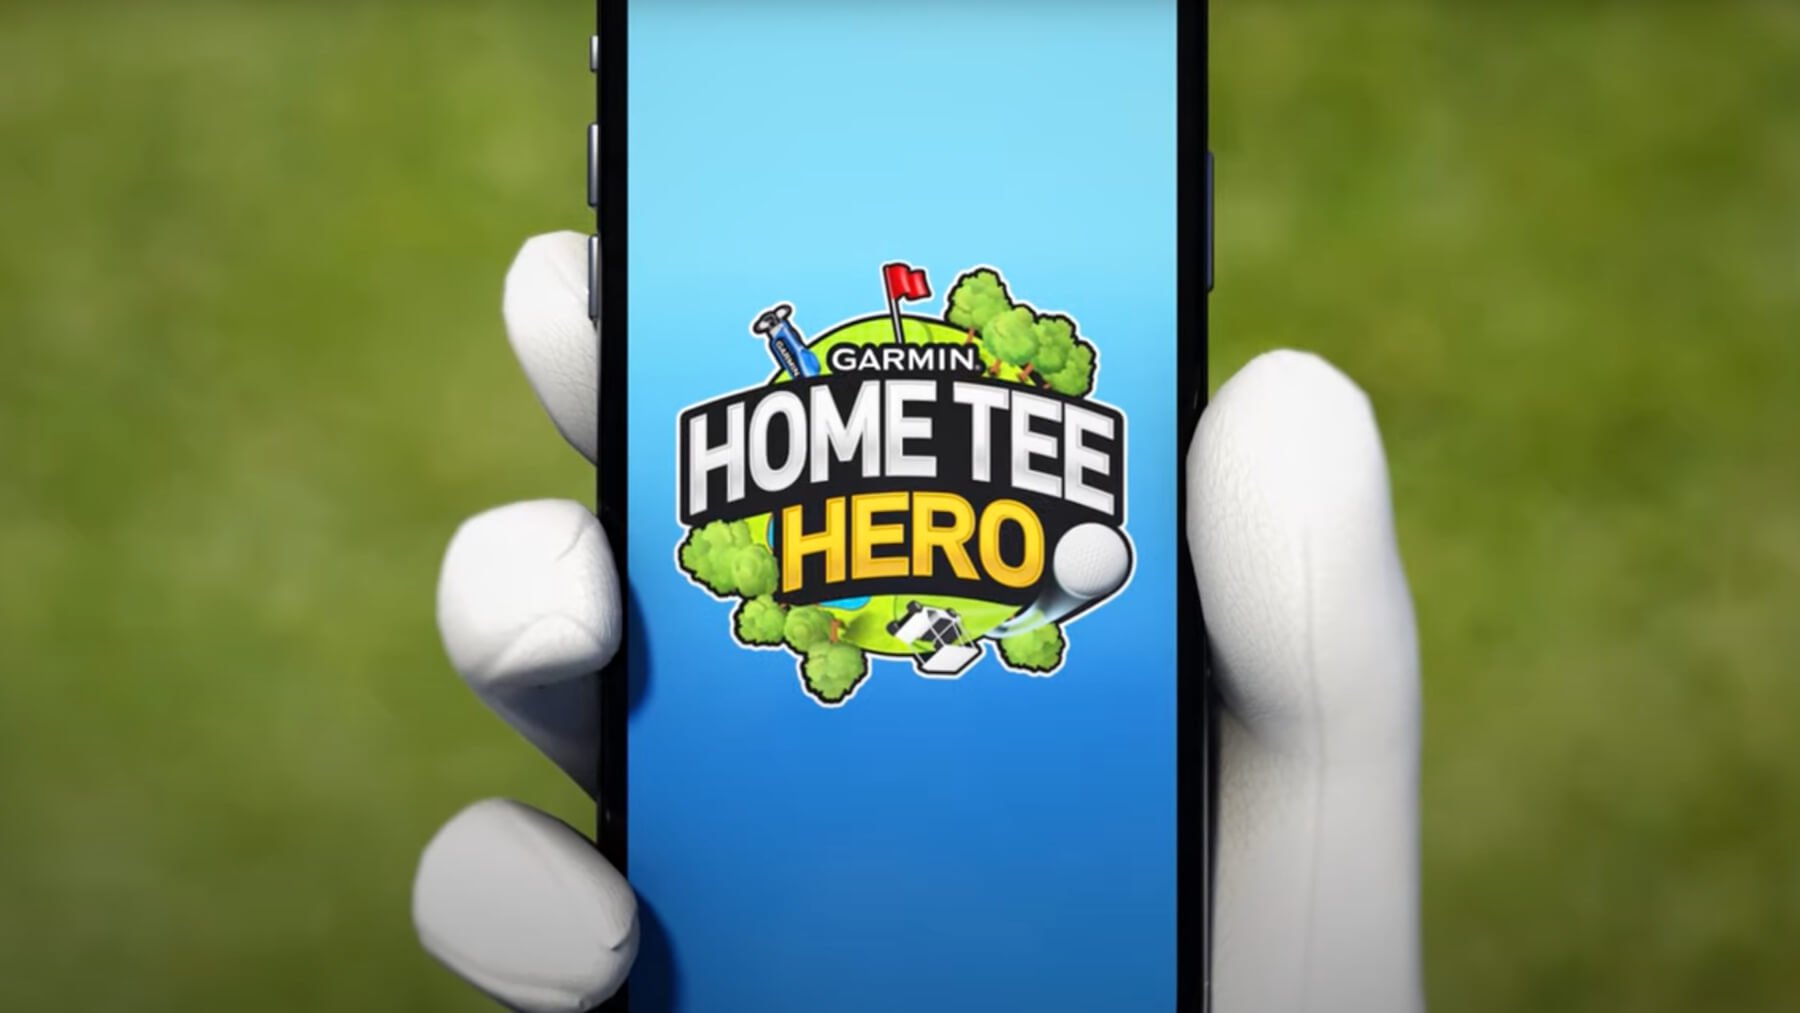 Home Tee Hero